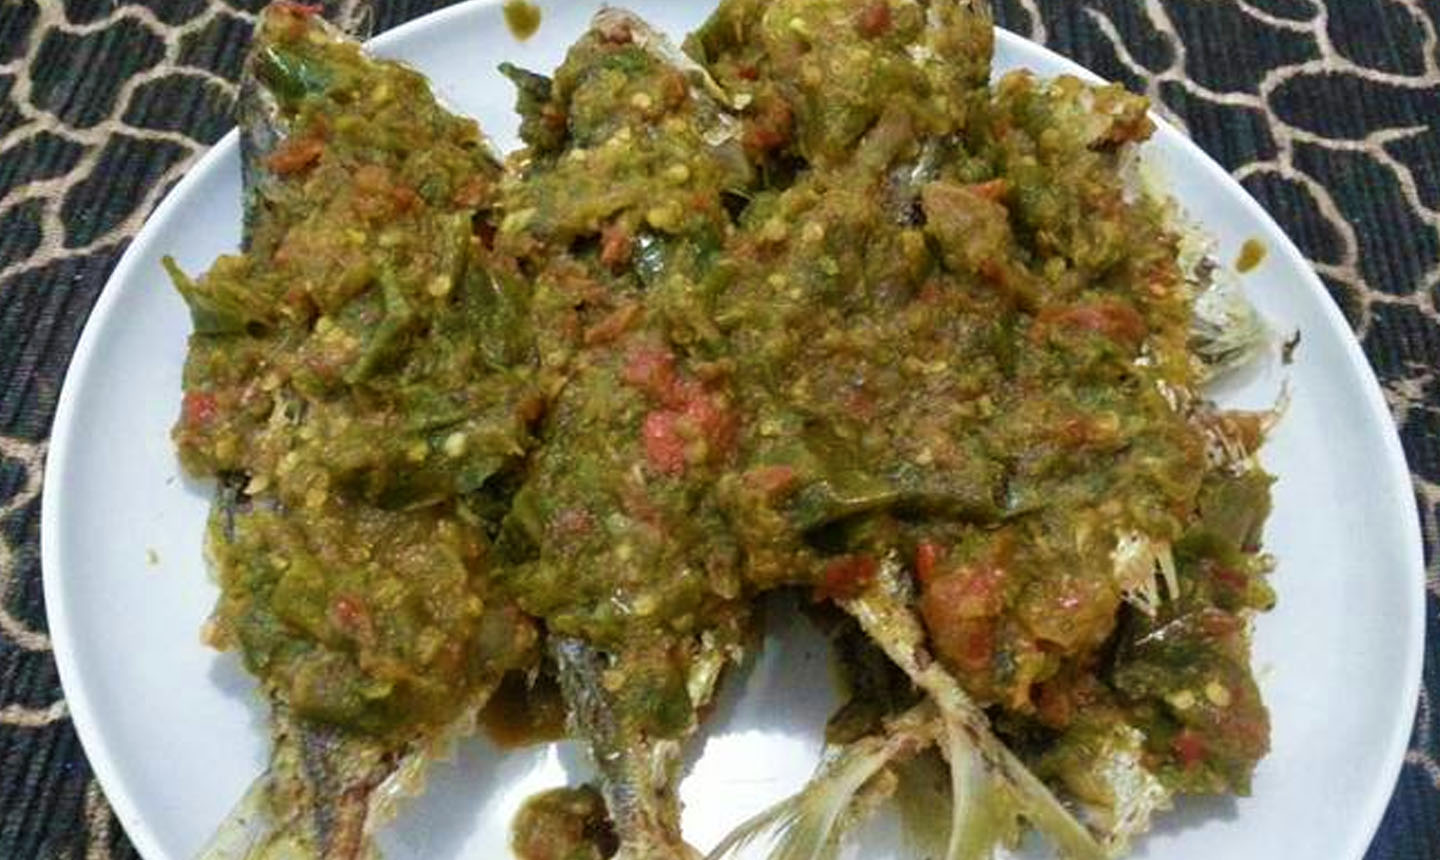  Cara  masak ikan kembung sambal balado  hijau  Resep 